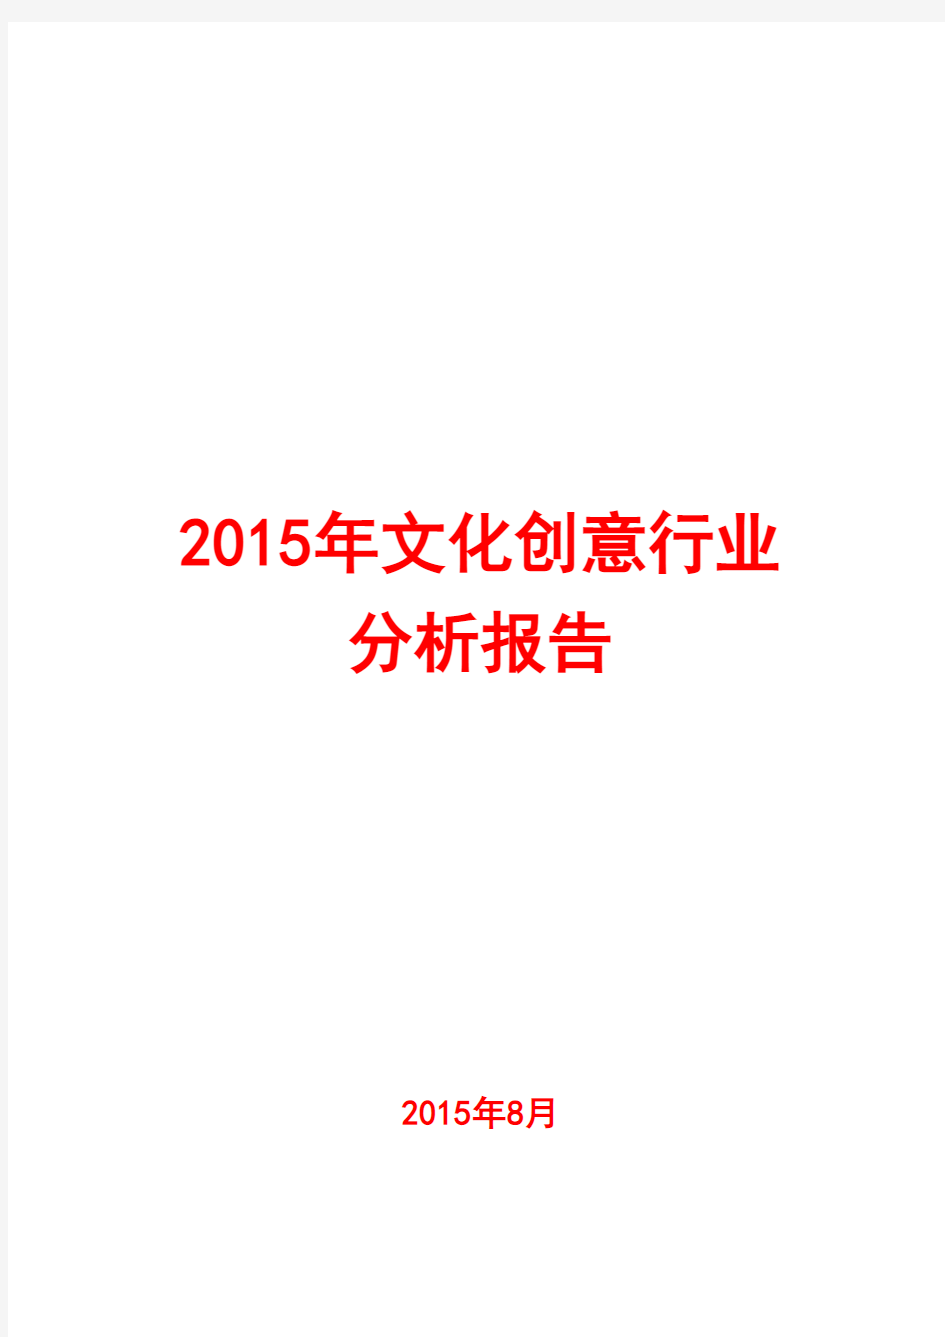 2015年文化创意行业分析报告